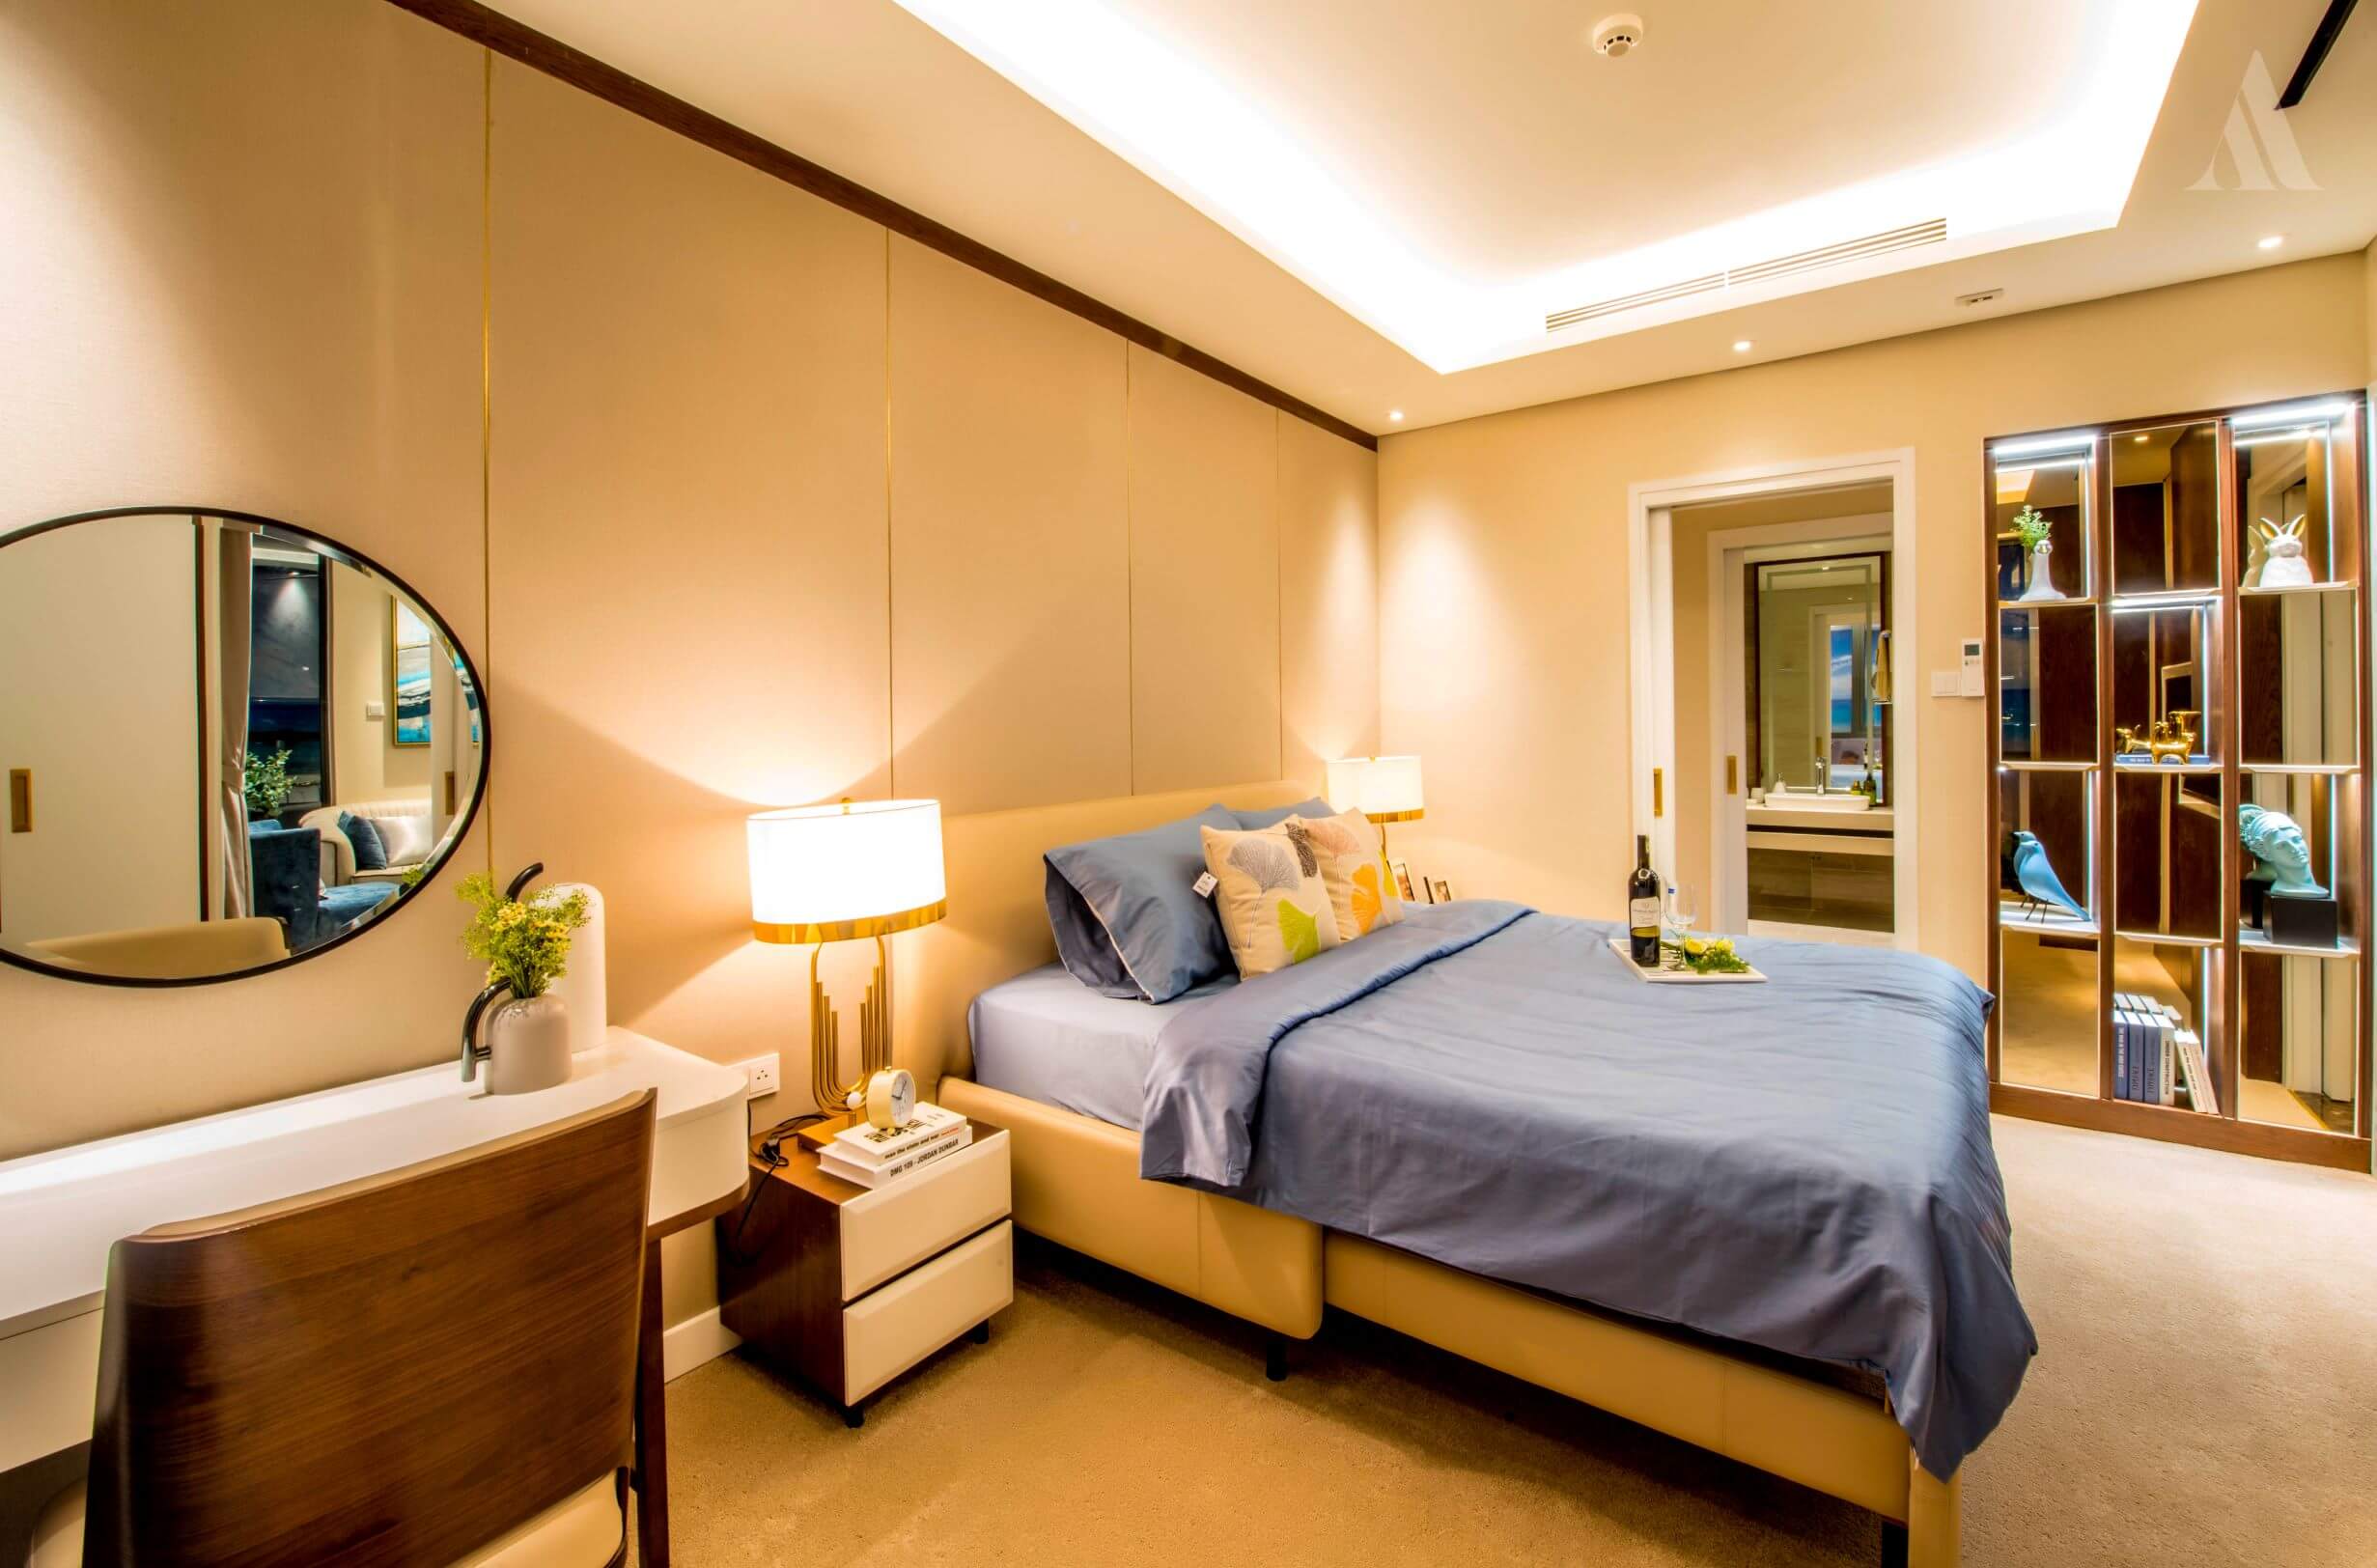 Phòng ngủ tại căn hộ Aria Đà Nẵng